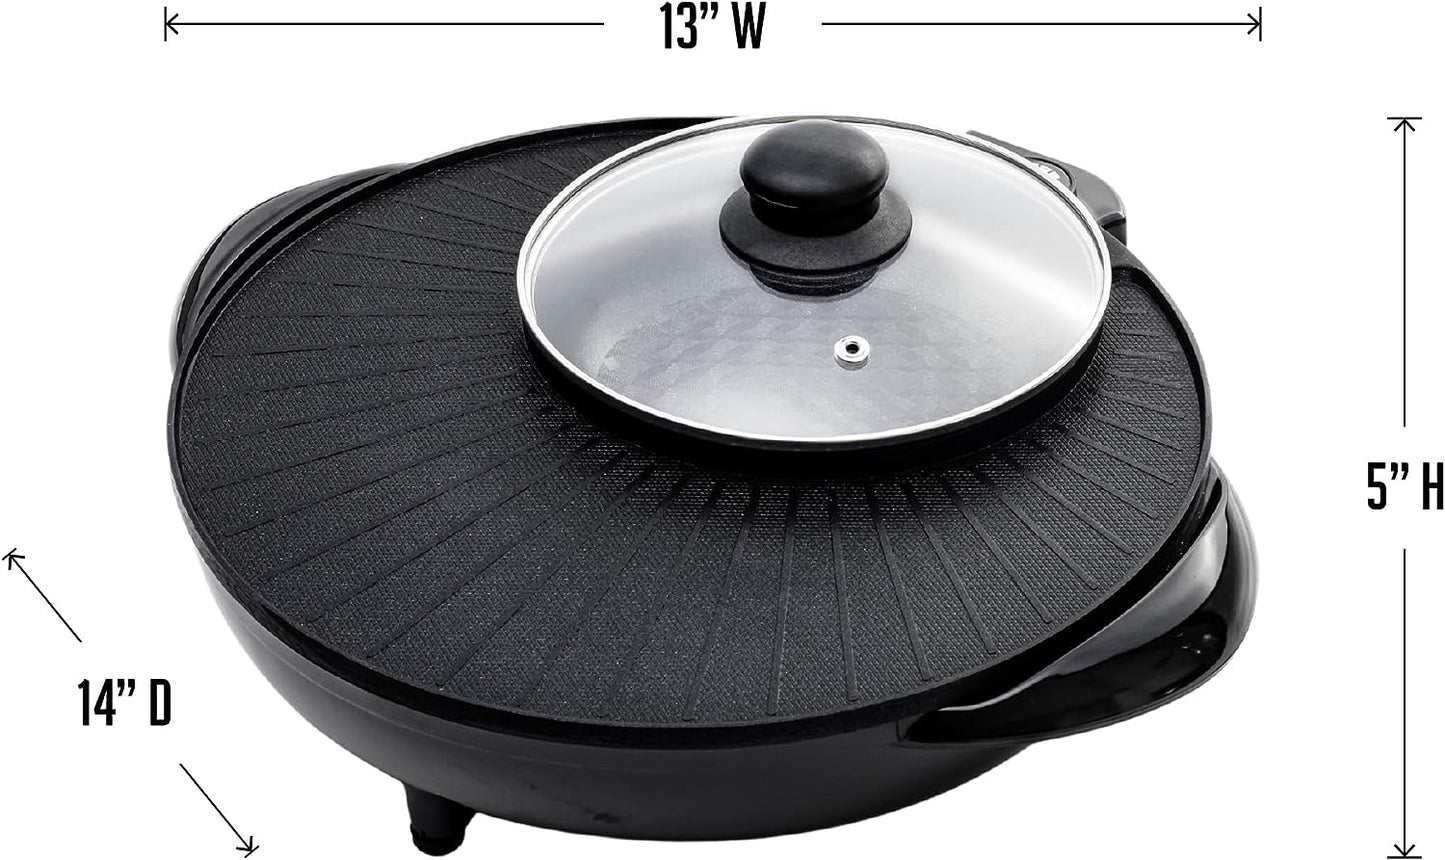 Ovente Multi-Purpose Electric Hotpot Grill